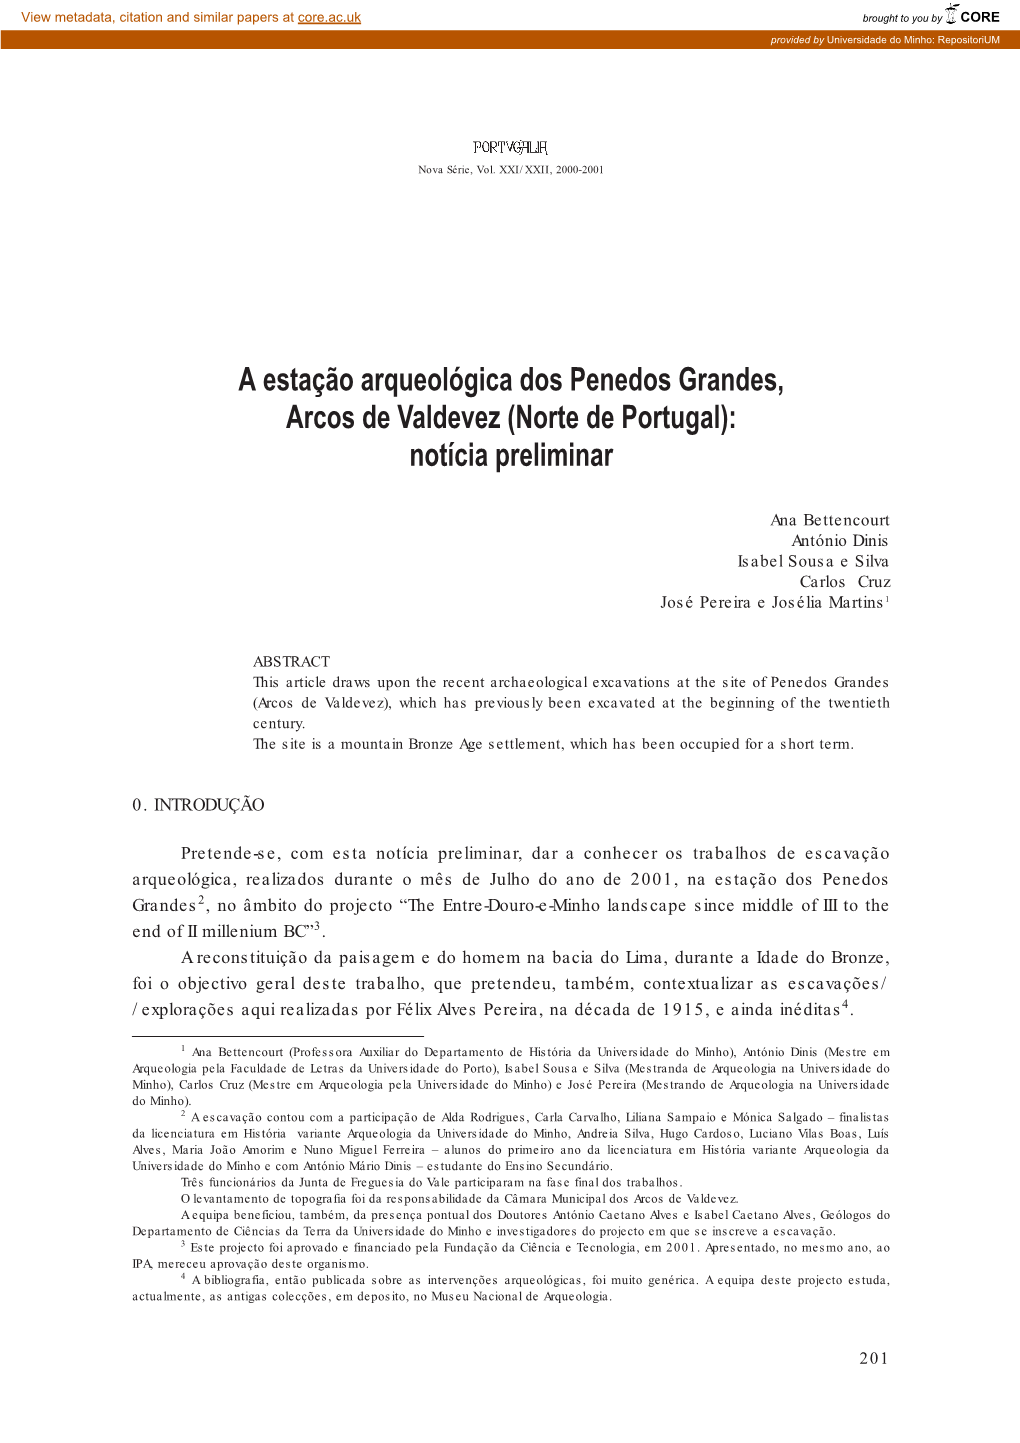 A Estação Arqueológica Dos Penedos Grandes, Arcos De Valdevez (Norte De Portugal): Notícia Preliminar